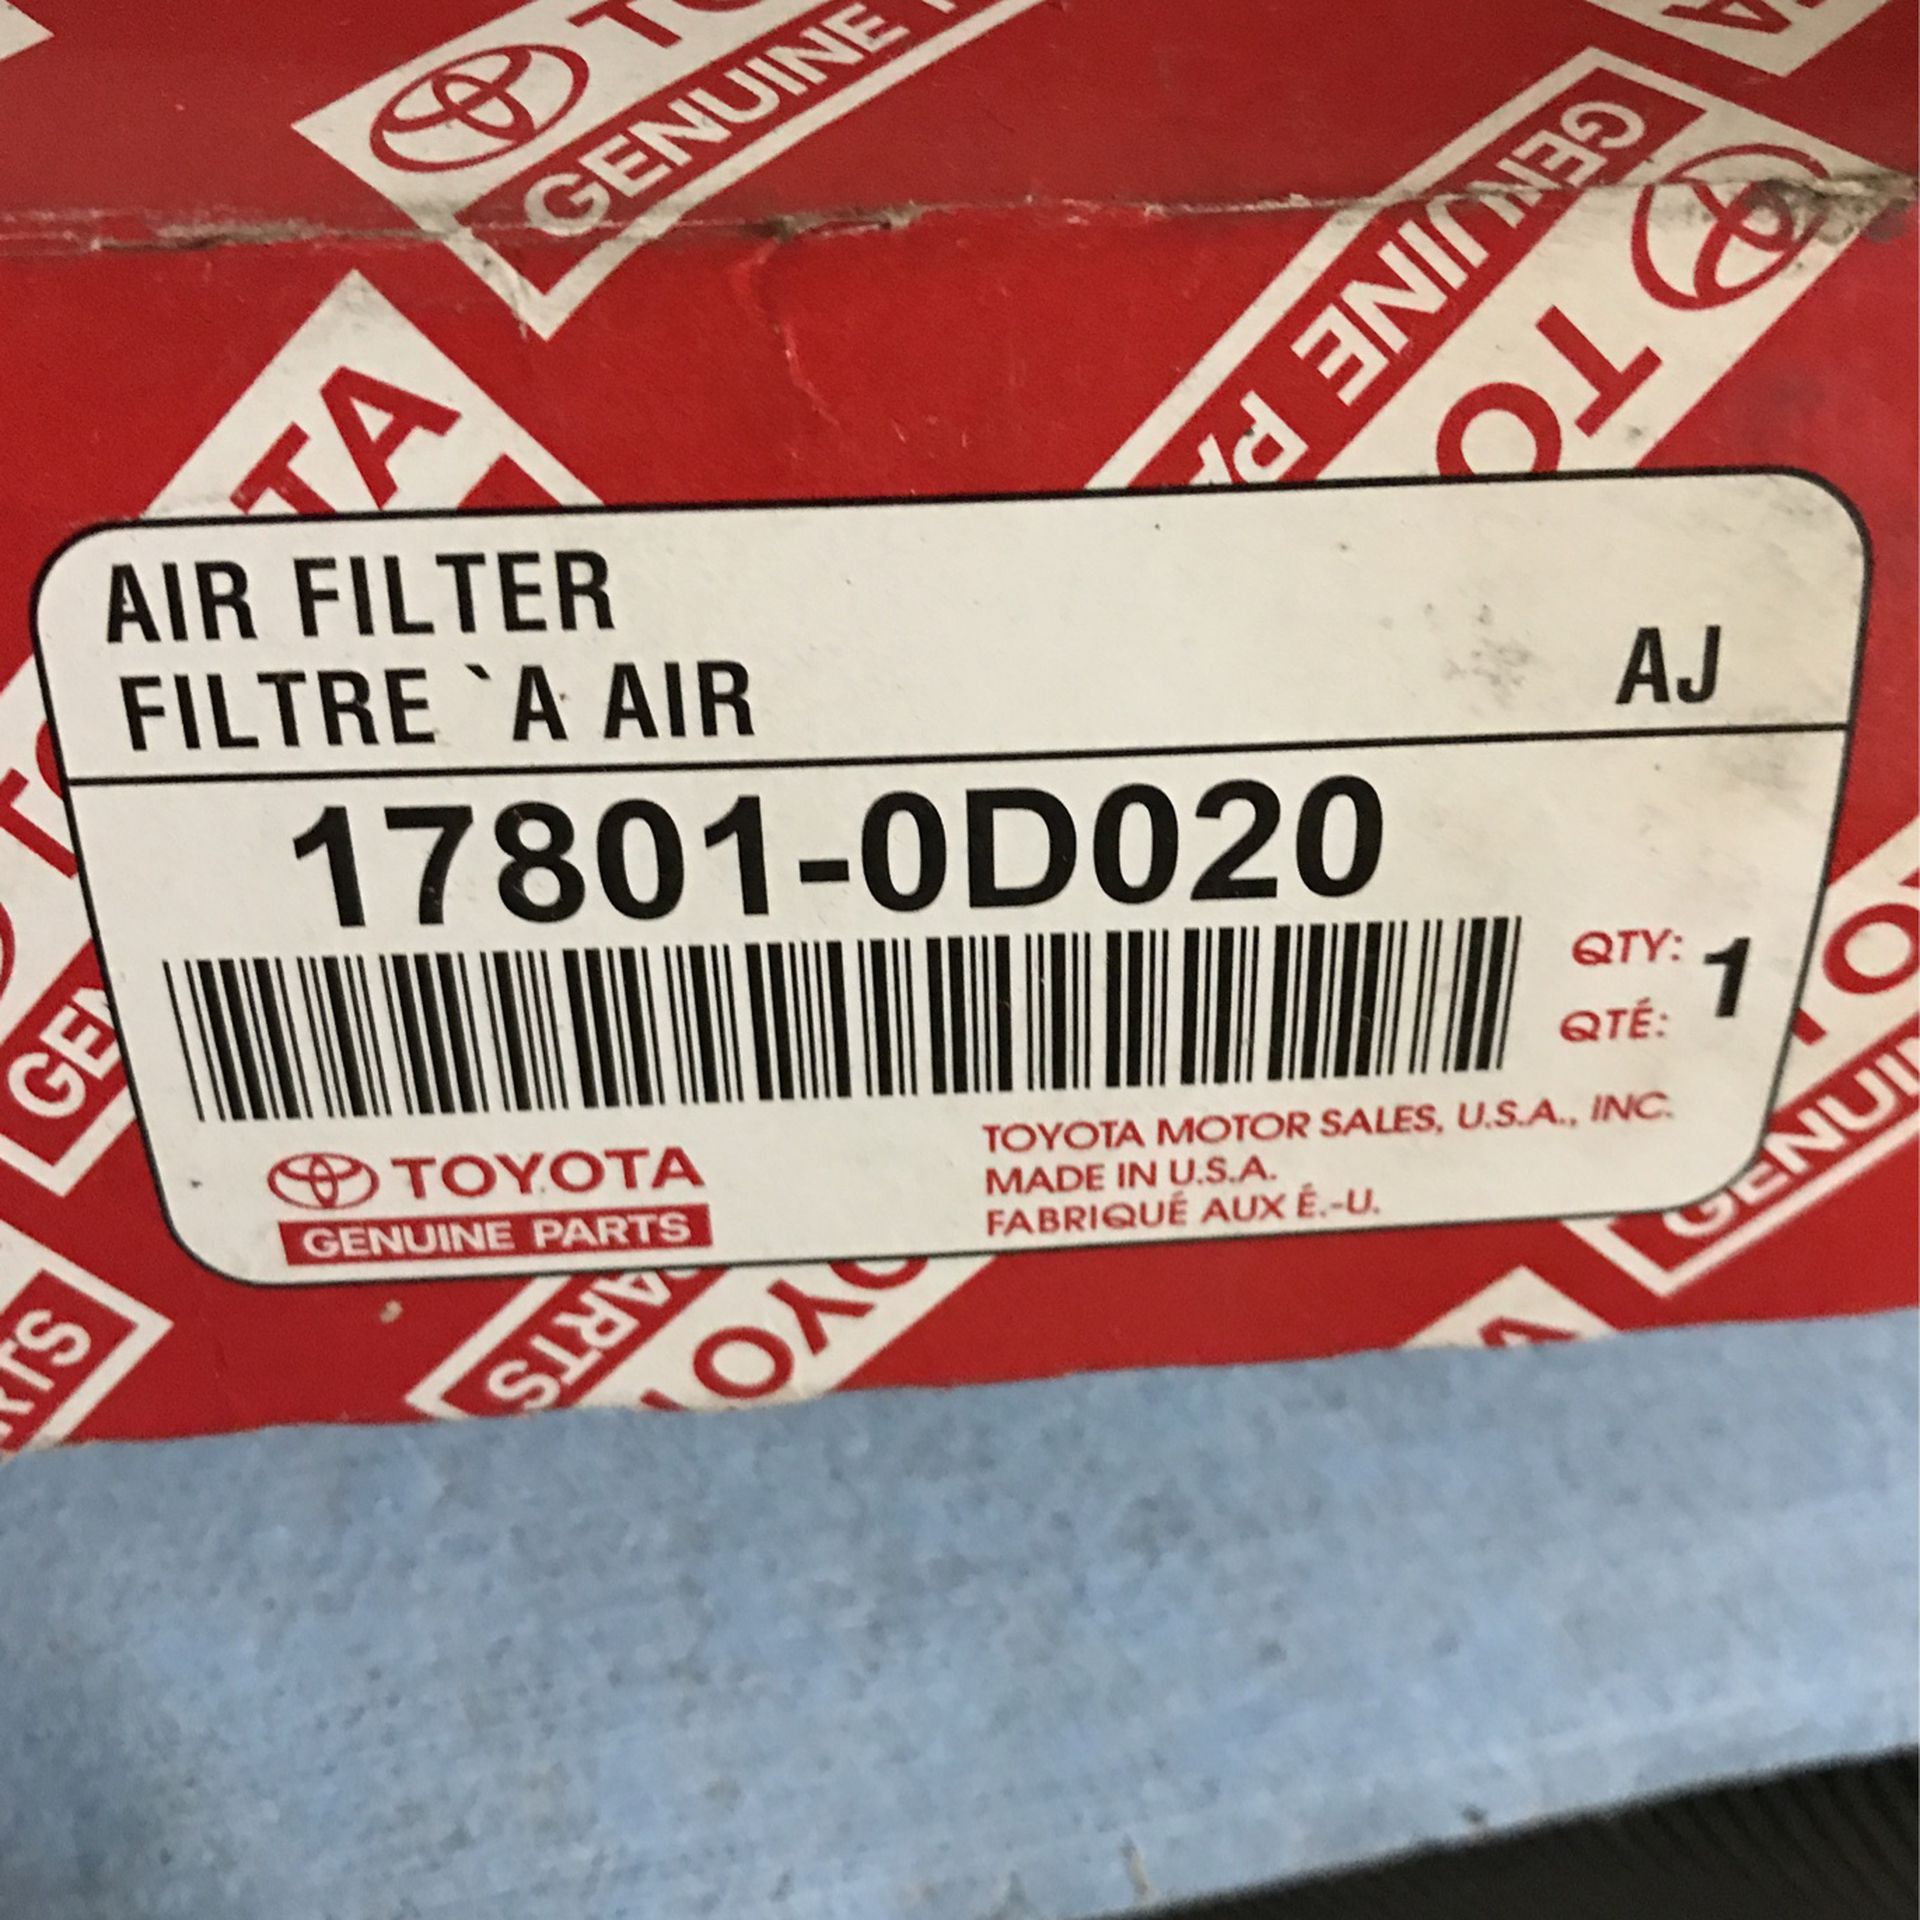 Toyota Air Filter Part # 17801-0D020